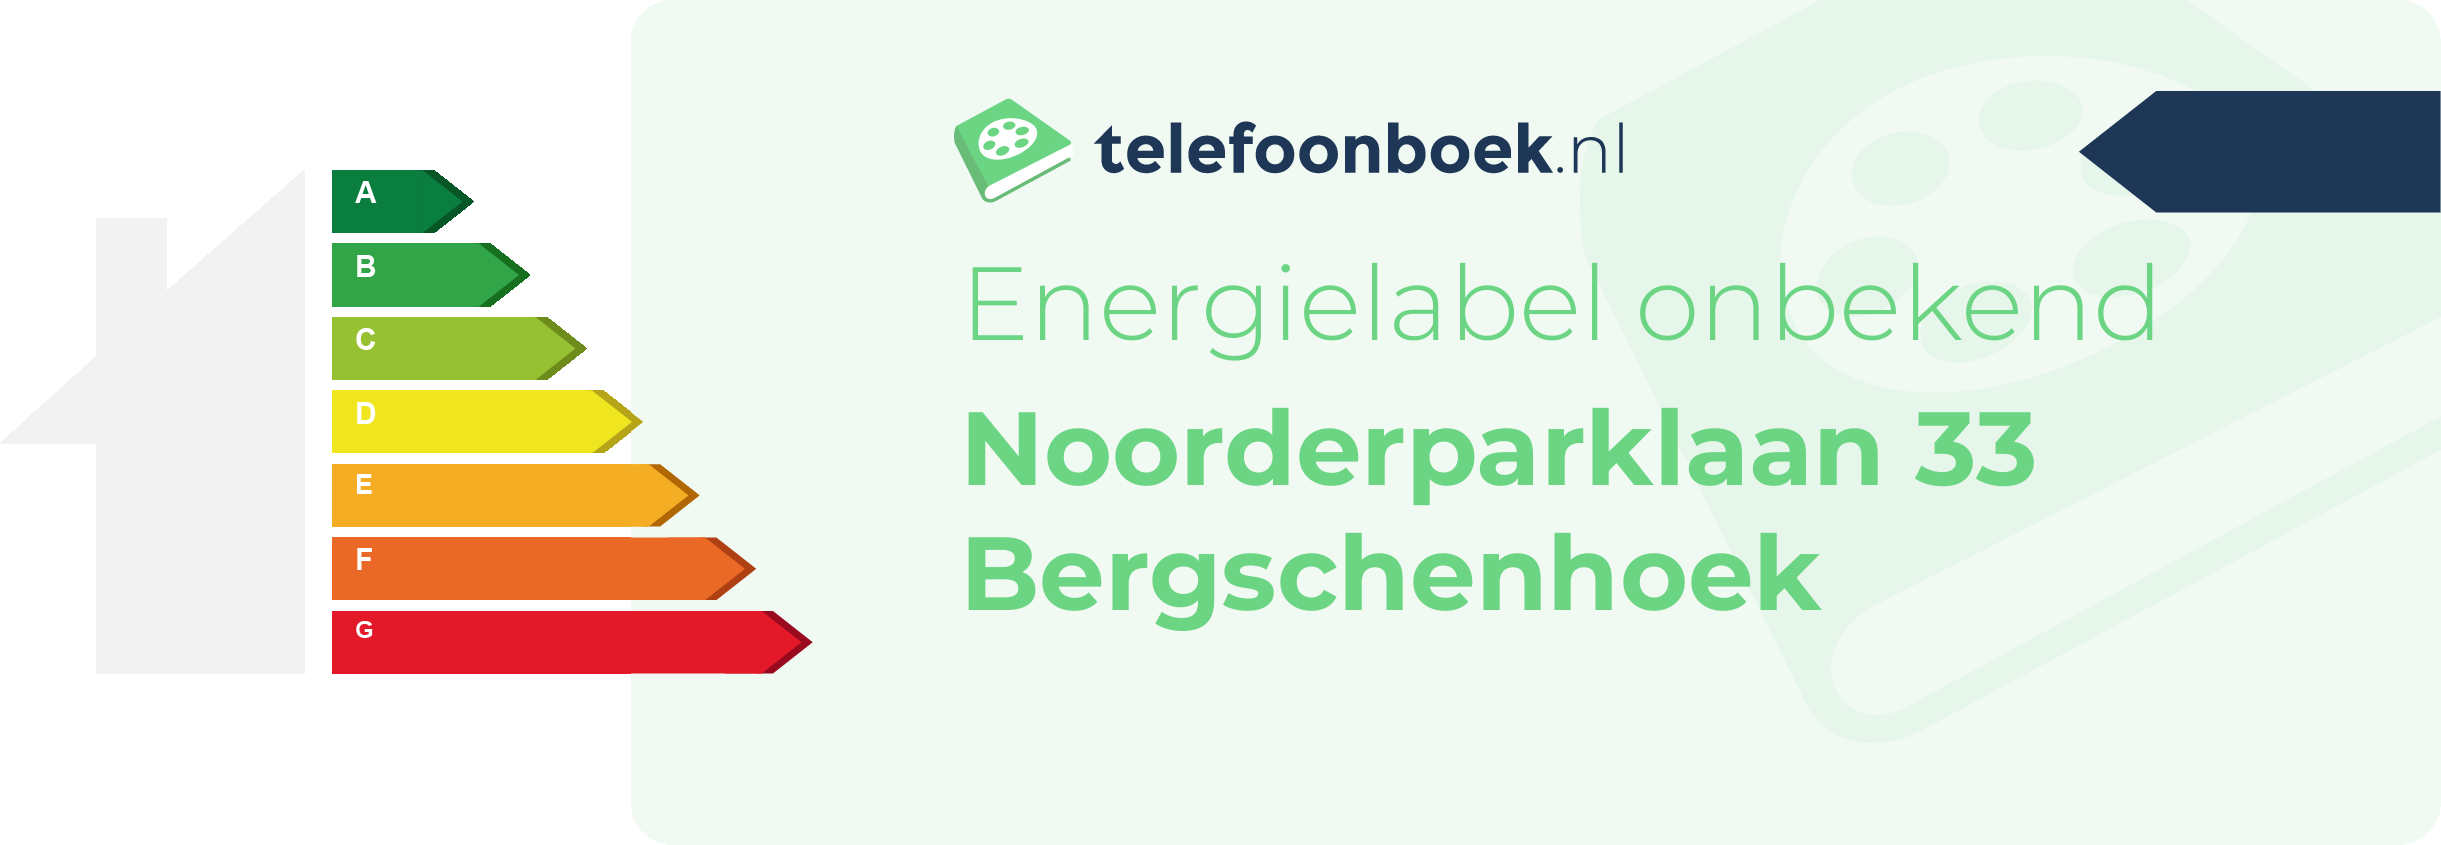 Energielabel Noorderparklaan 33 Bergschenhoek